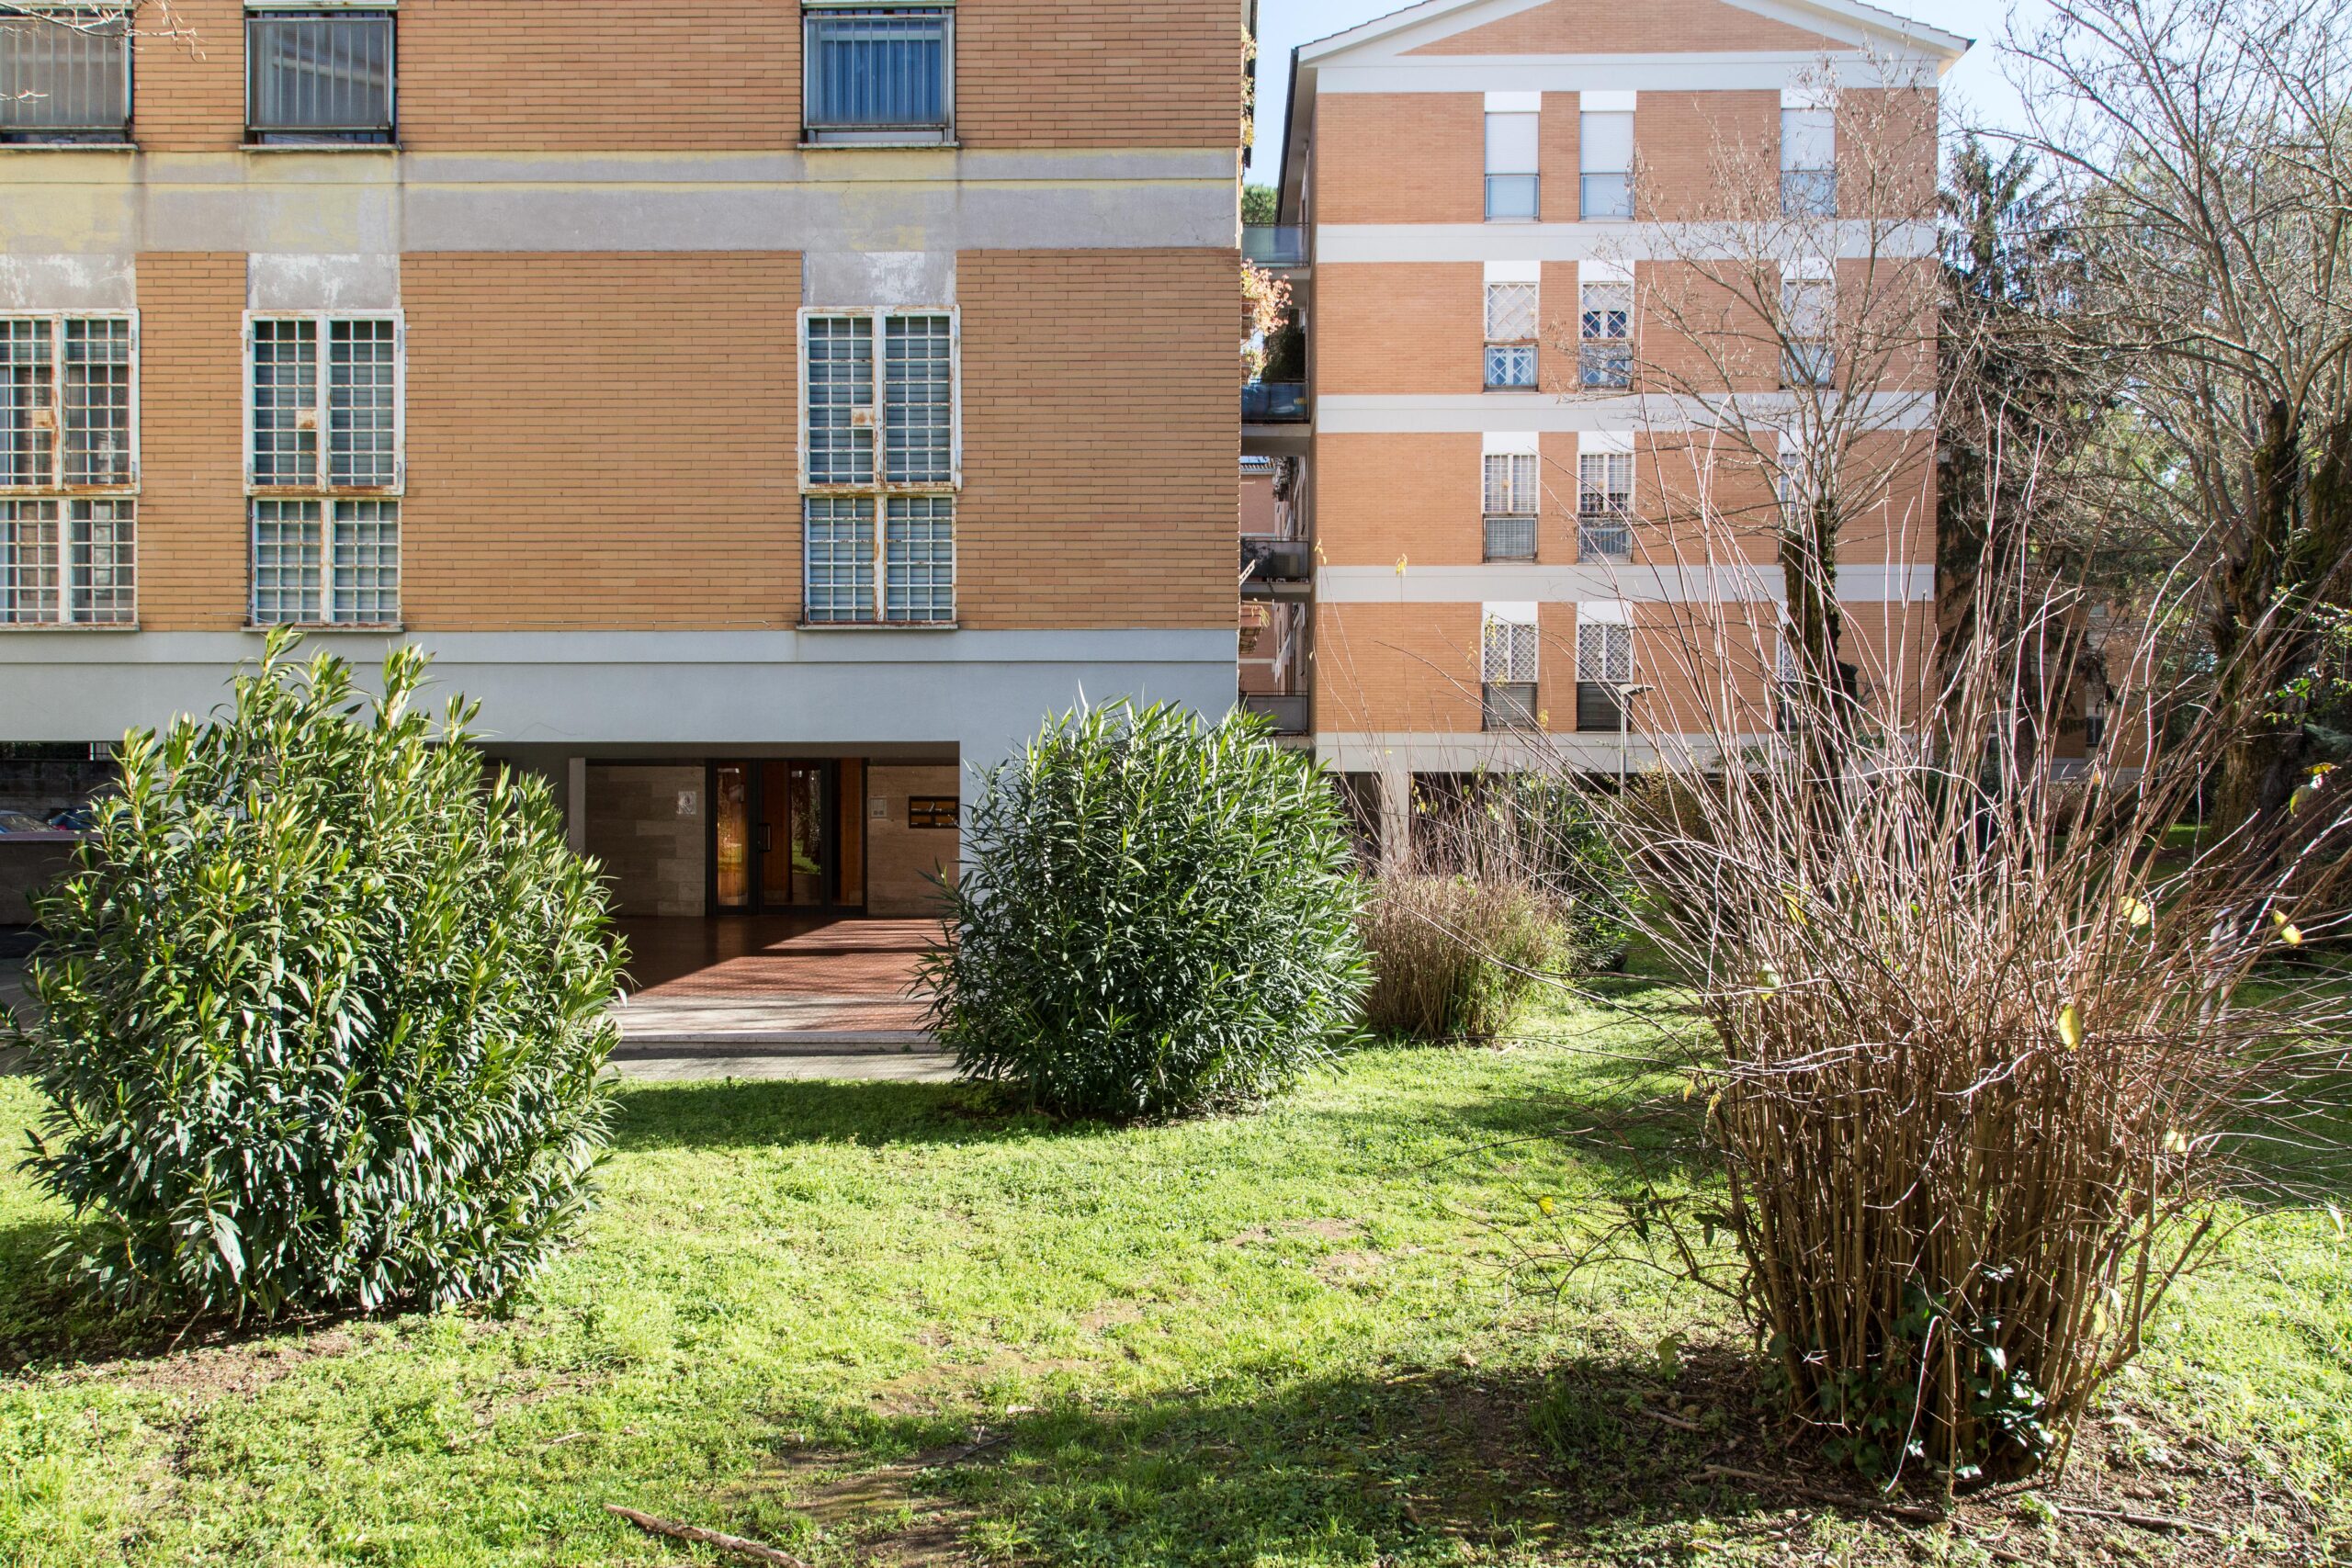 Eur/Dalmata – appartamento ampia metratura con 3 balconi, posto auto e cantina